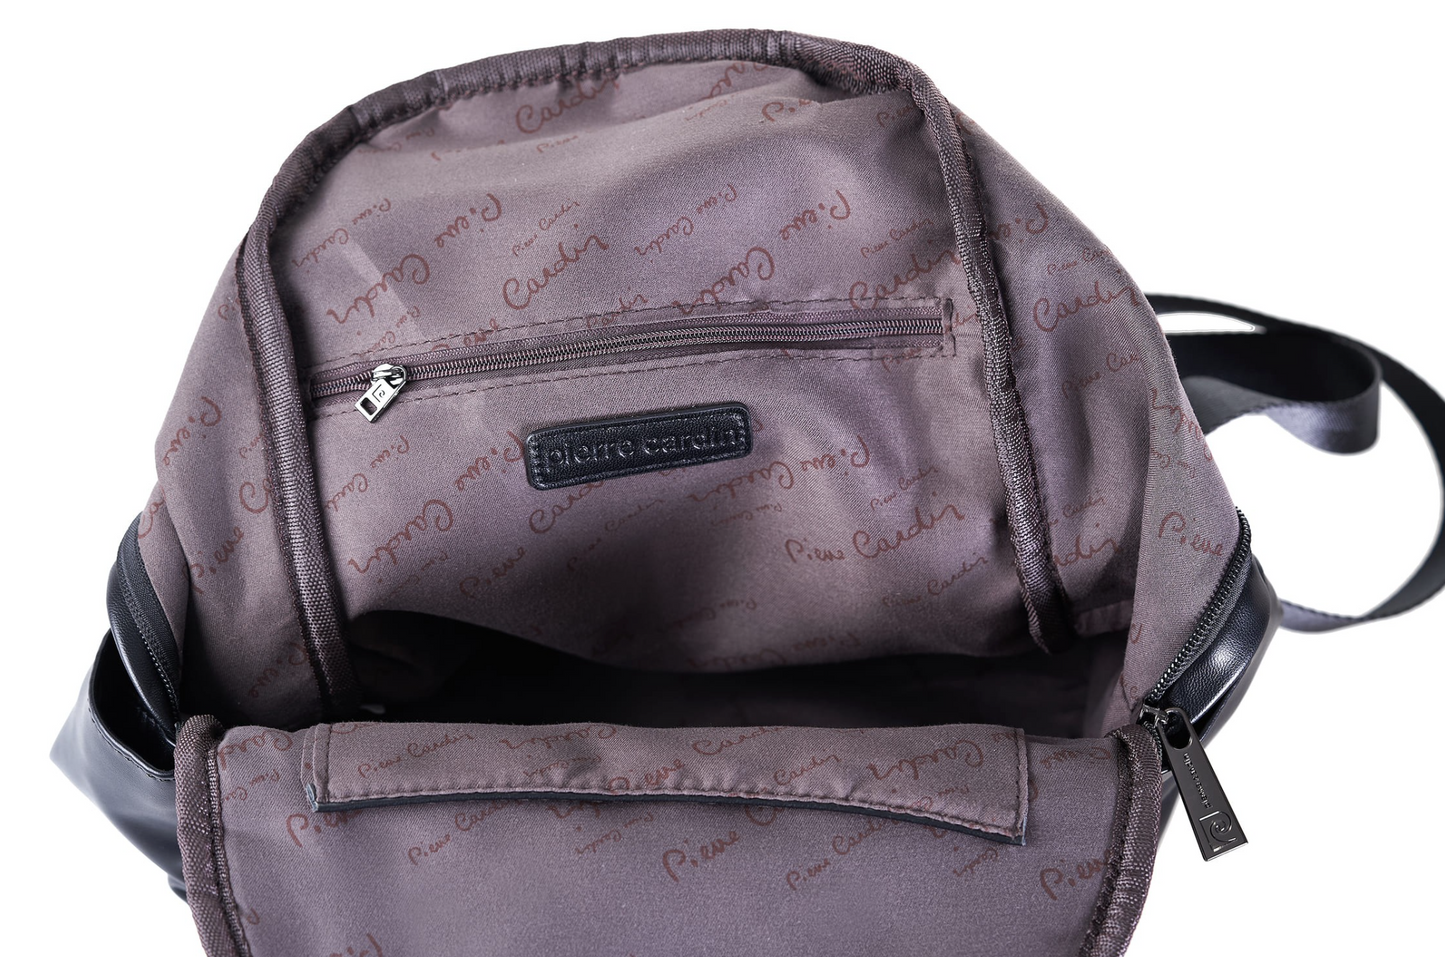 Pierre Cardin black backpack for women